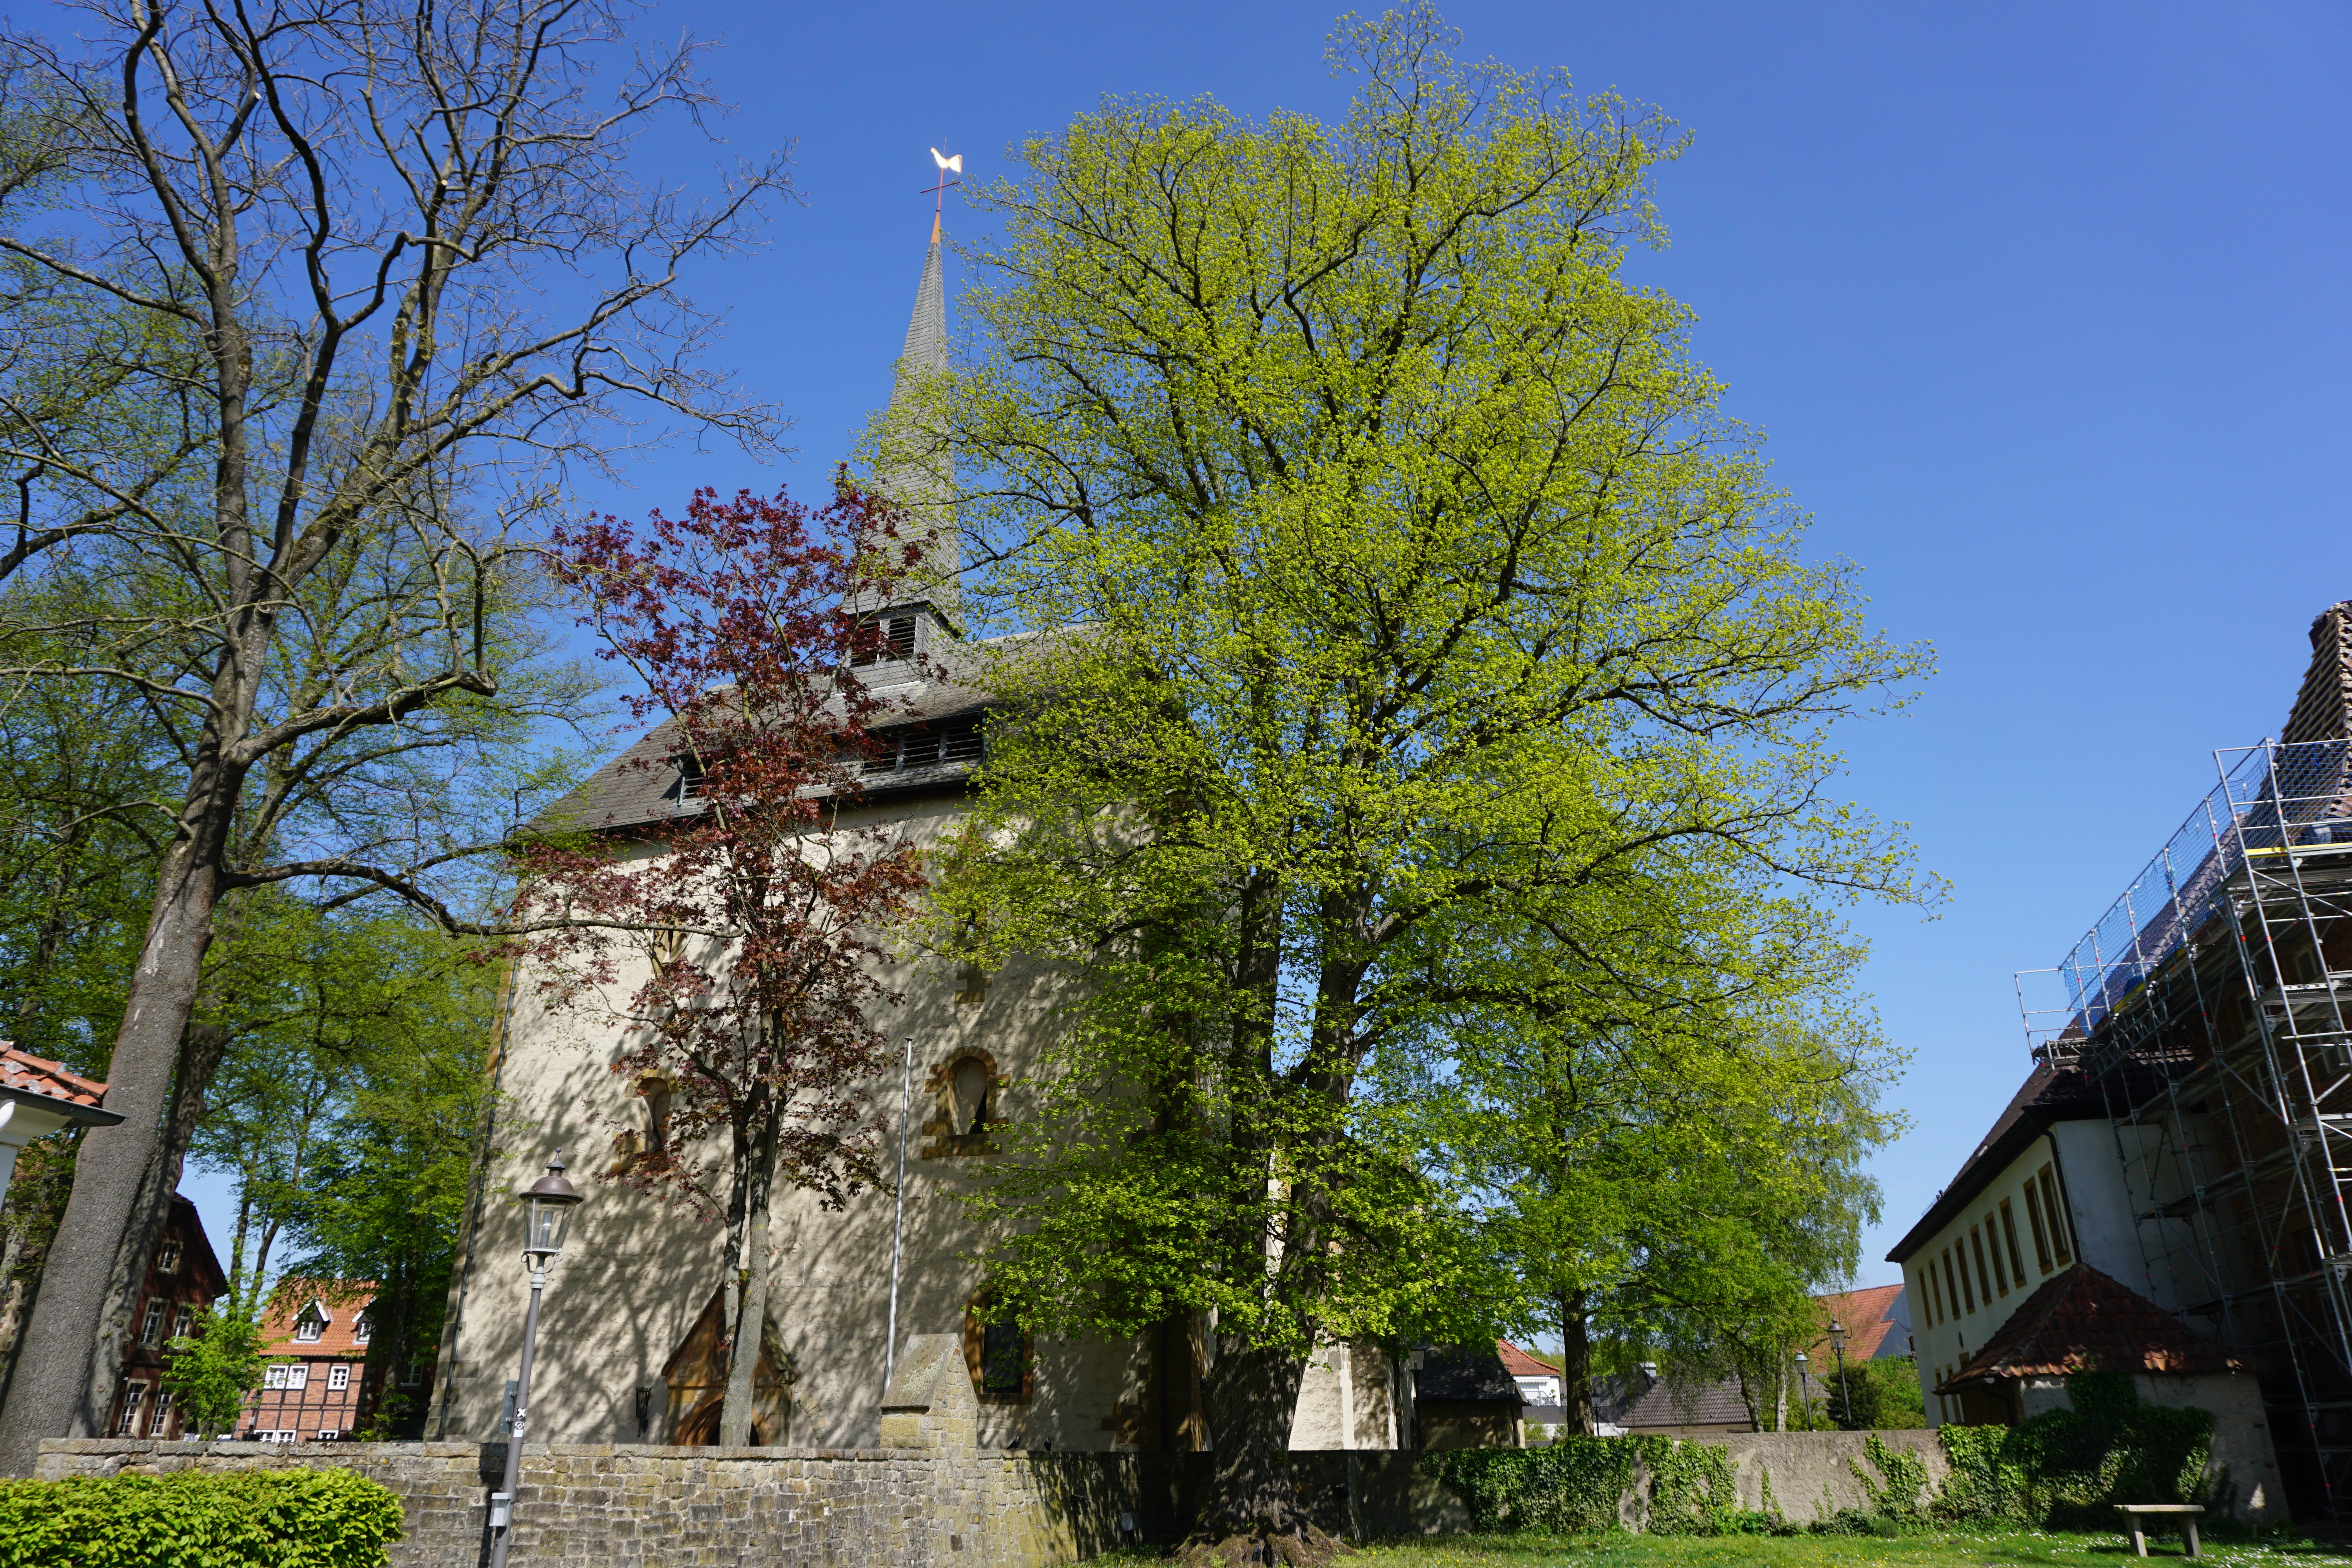 Pfarrkirche St. Laurentius in Clarholz, Herzebrock-Clarholz.
